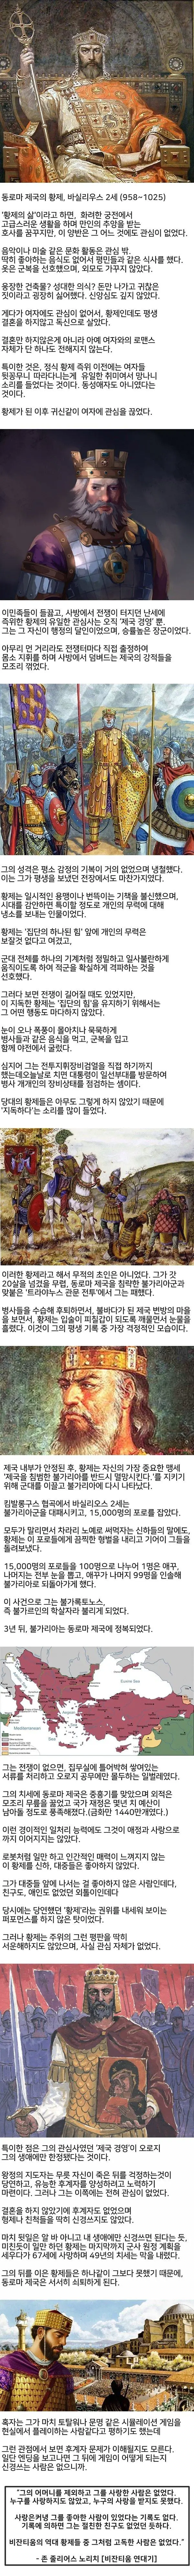 제국을 게임처럼 운영했던 황제 바실리우스2세 | mbong.kr 엠봉